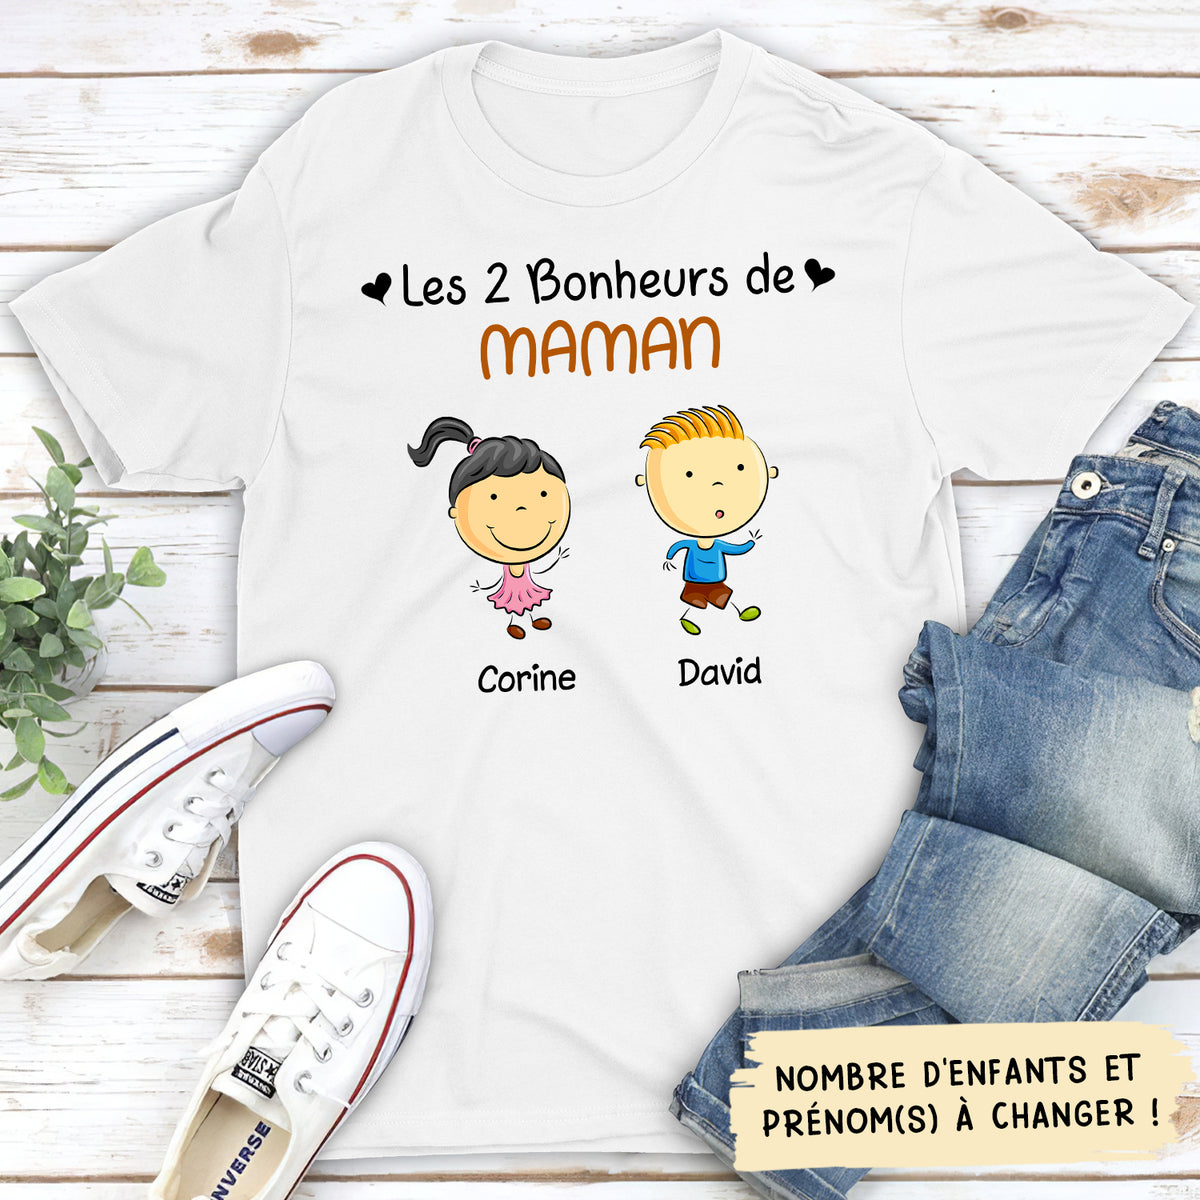 T-shirt Unisex Personnalisé - Bonheurs De Maman